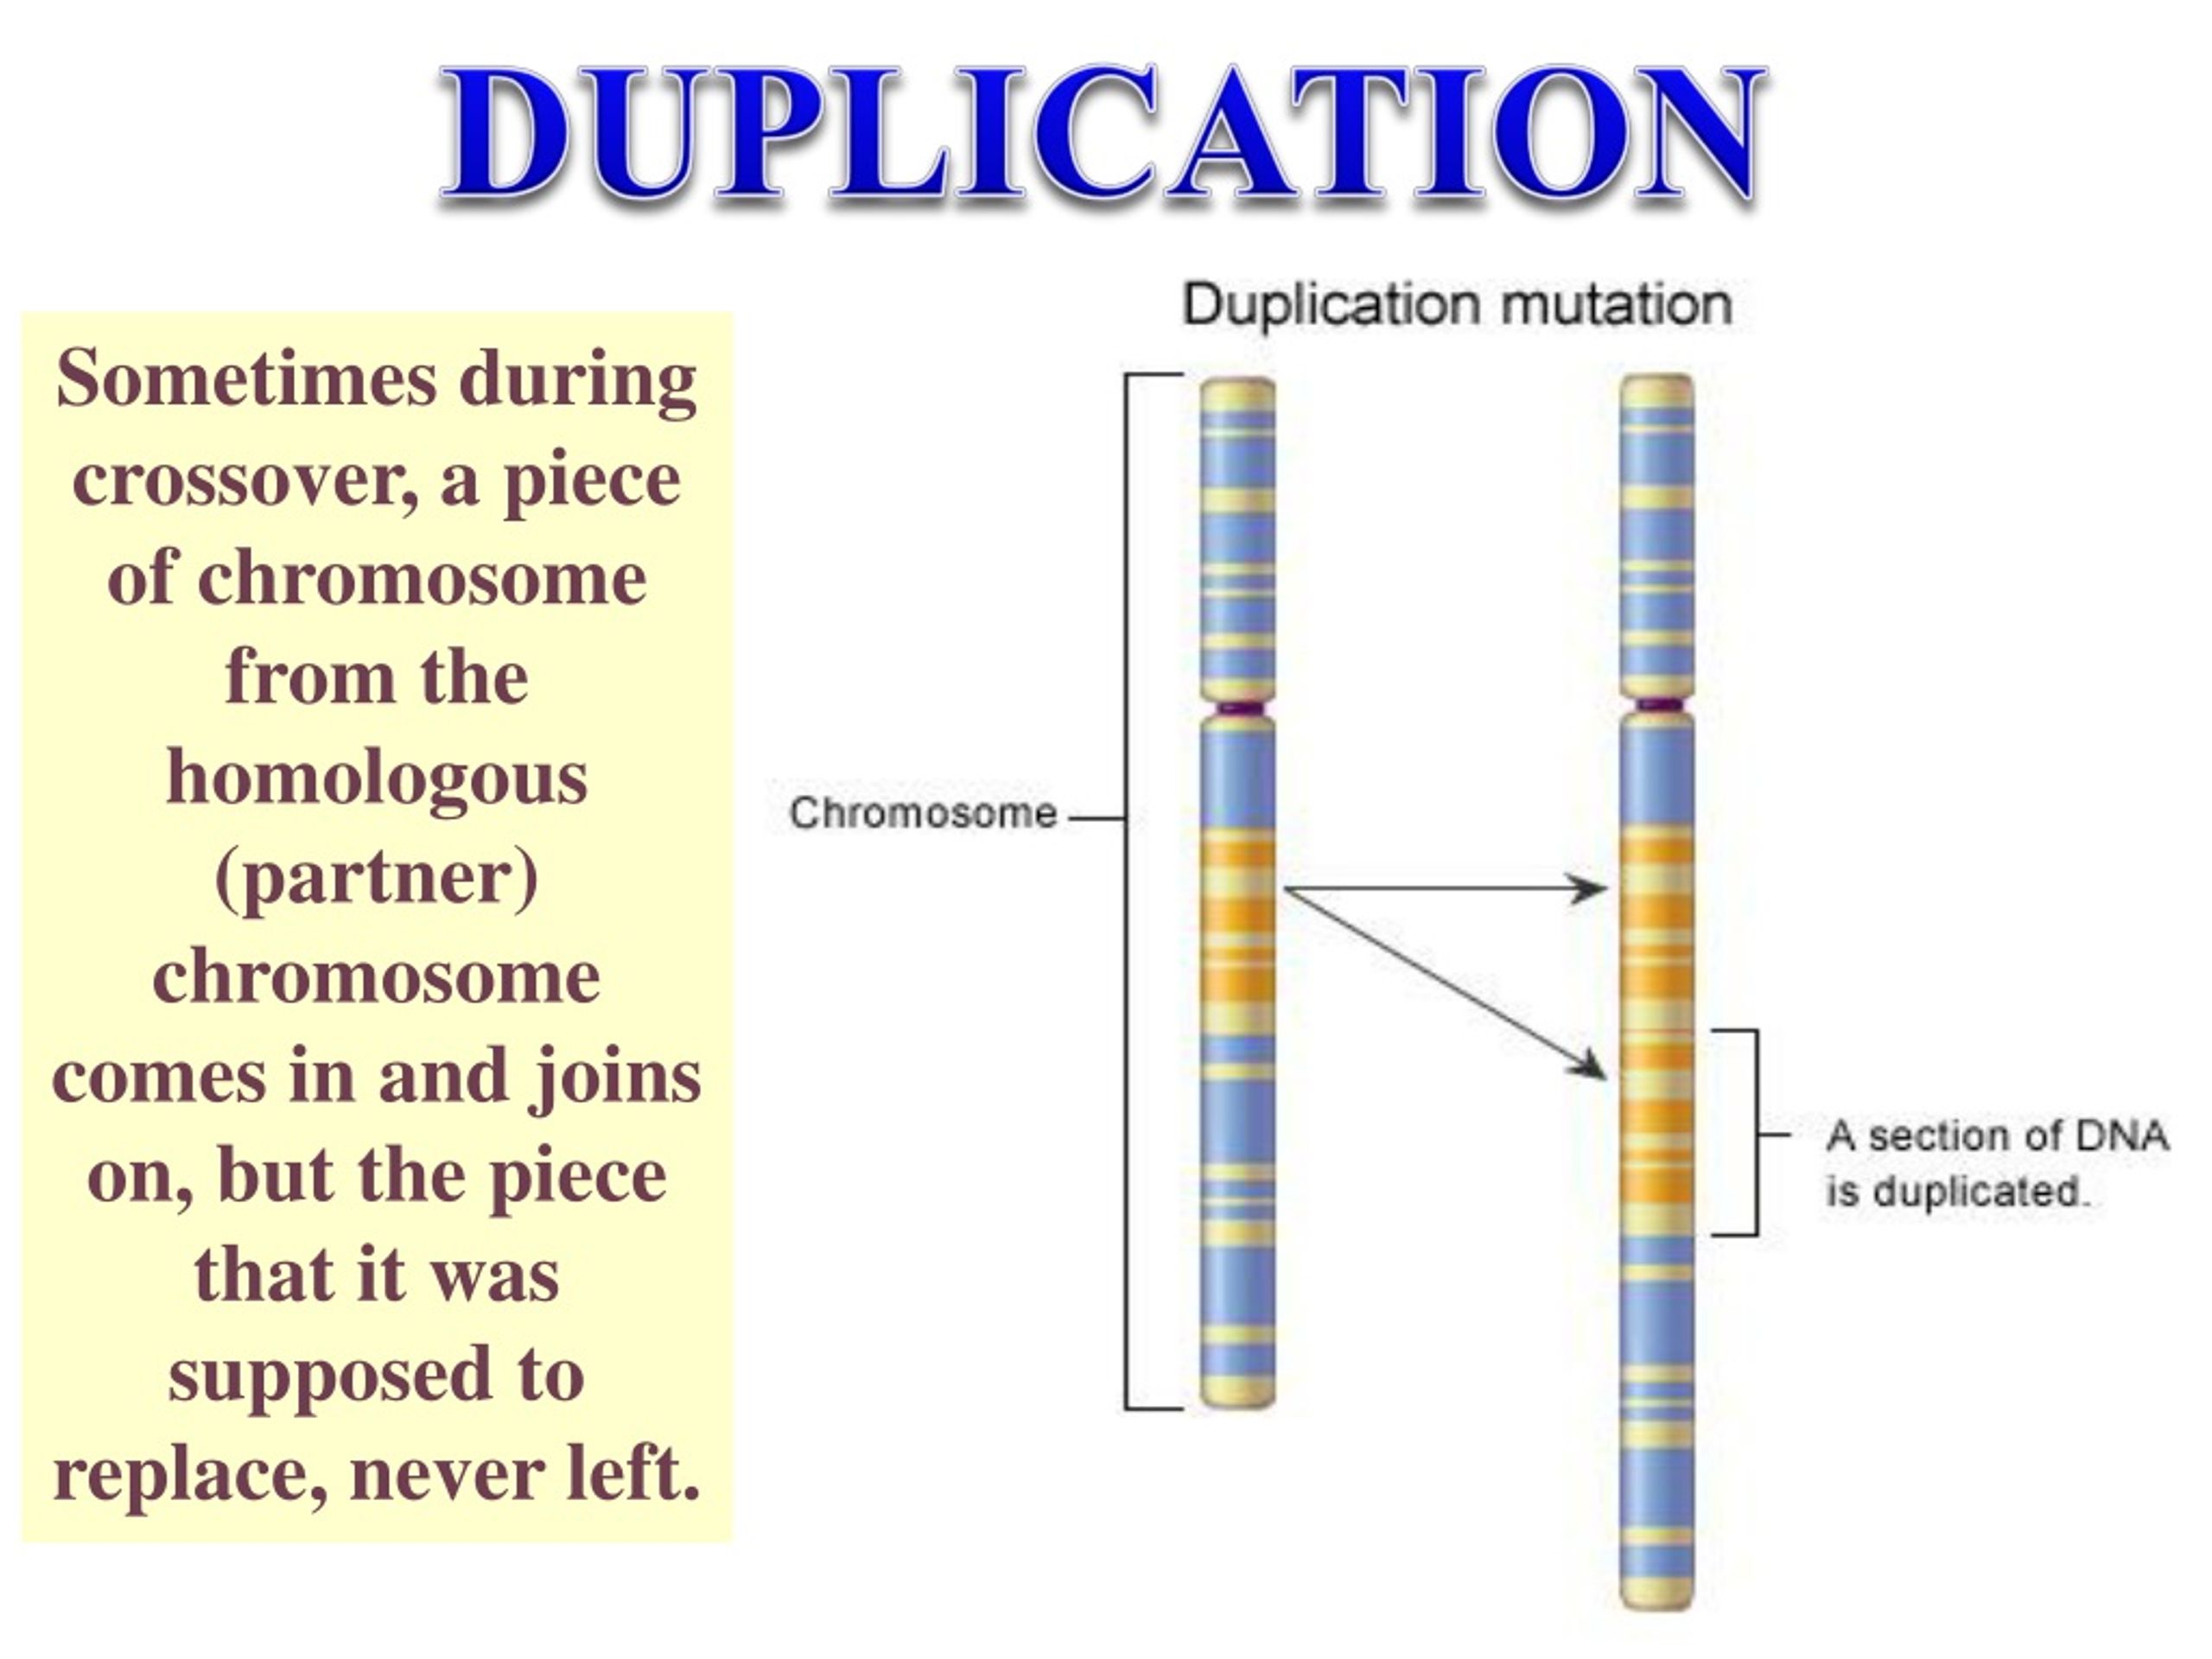 Гены в хромосоме образуют группу